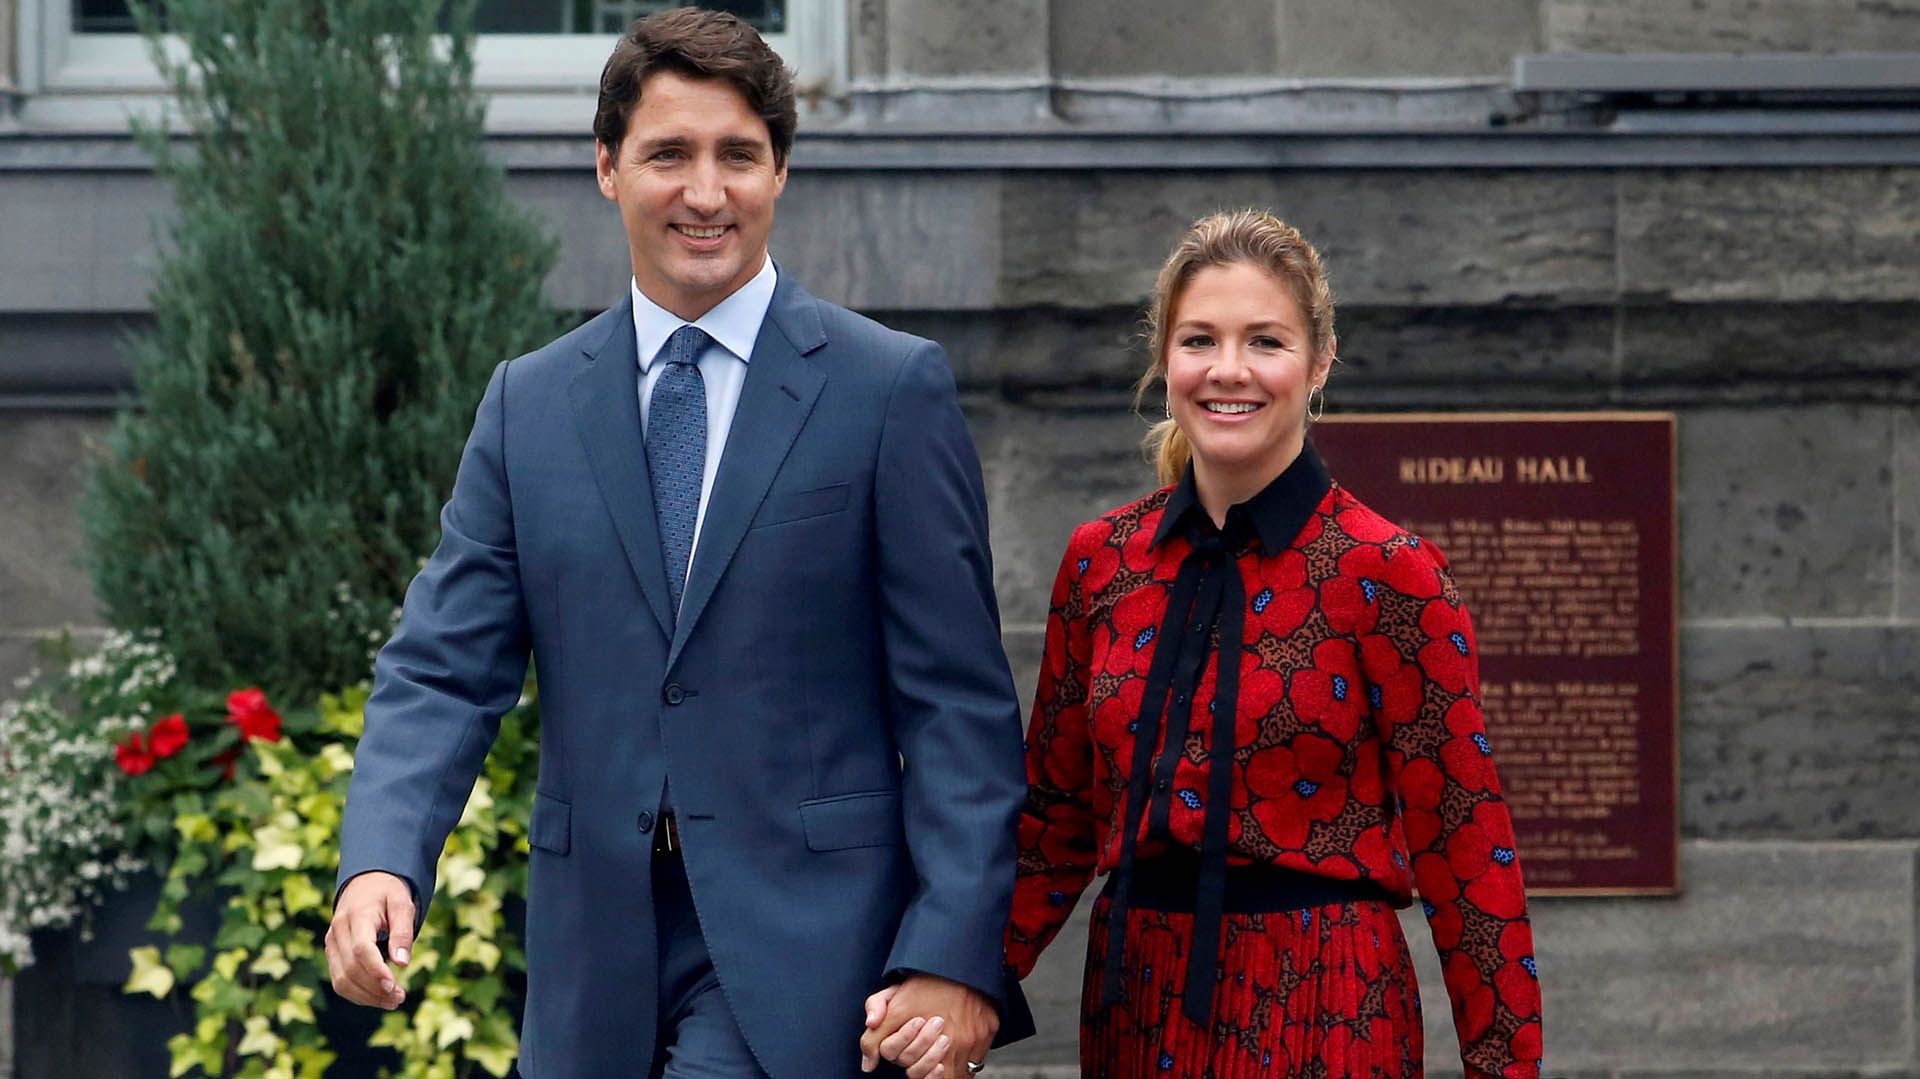 La semana pasada las autoridades canadienses confirmaron que la primera dama Sophie Trudeau contrajo coronavirus tras un viaje a Londres (REUTERS/Patrick Doyle)